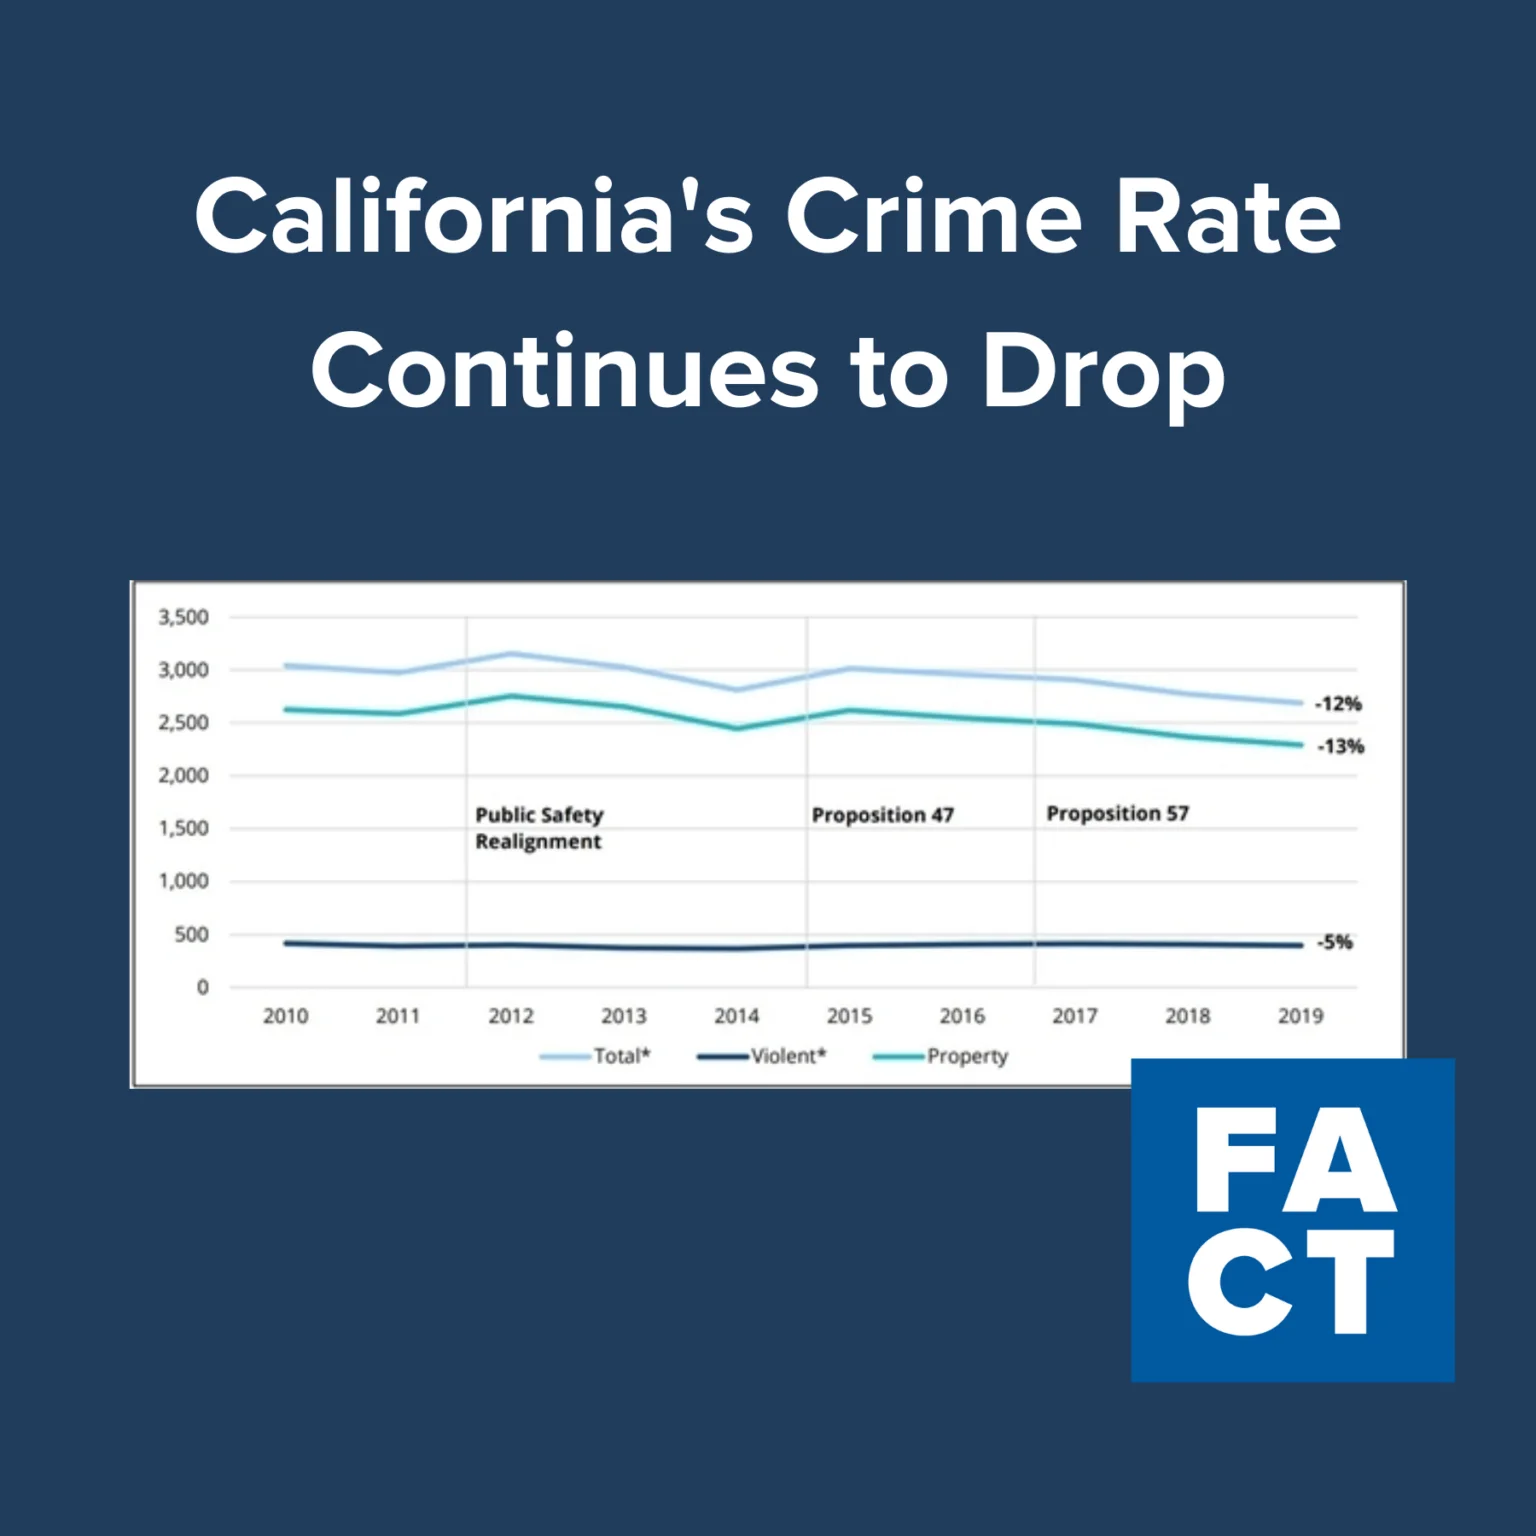 שיעור הפשיעה בקליפורניה יורד